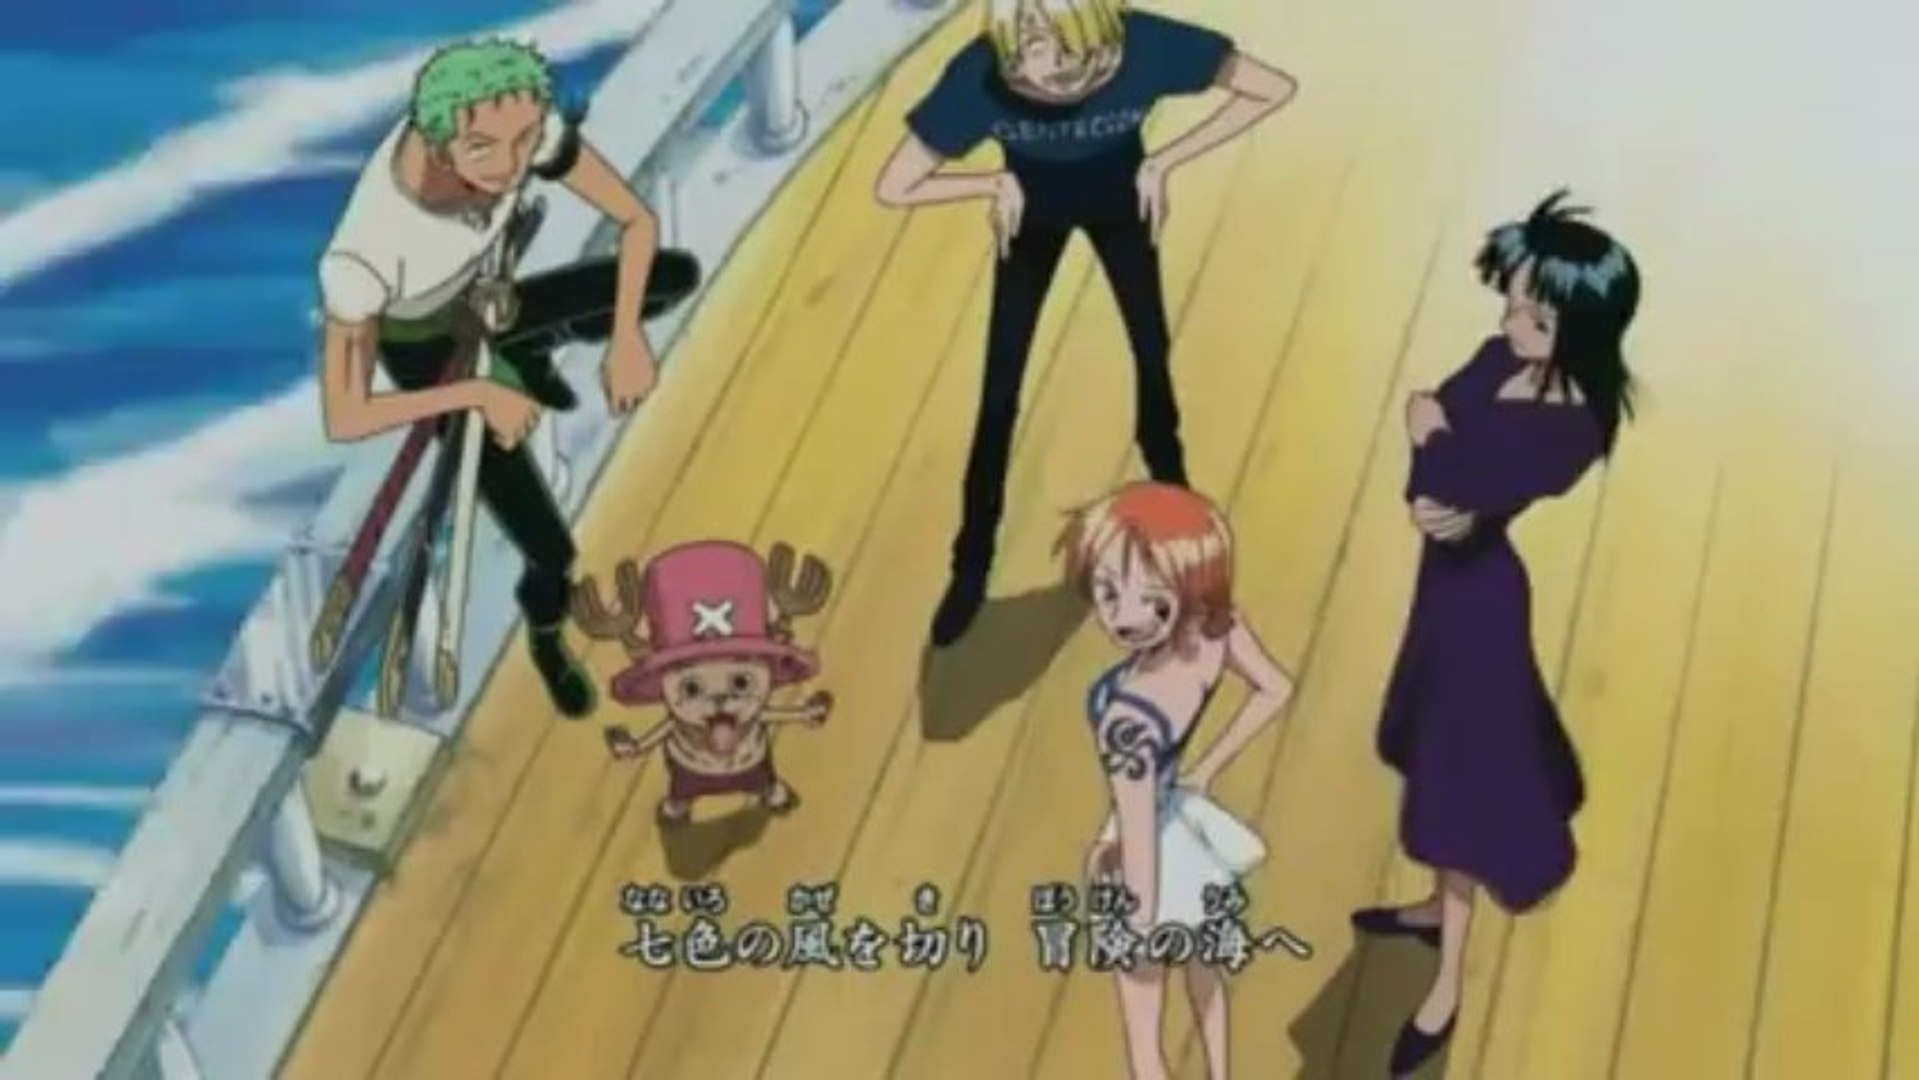 One Piece, Opening 5 - Kokoro no Chizu